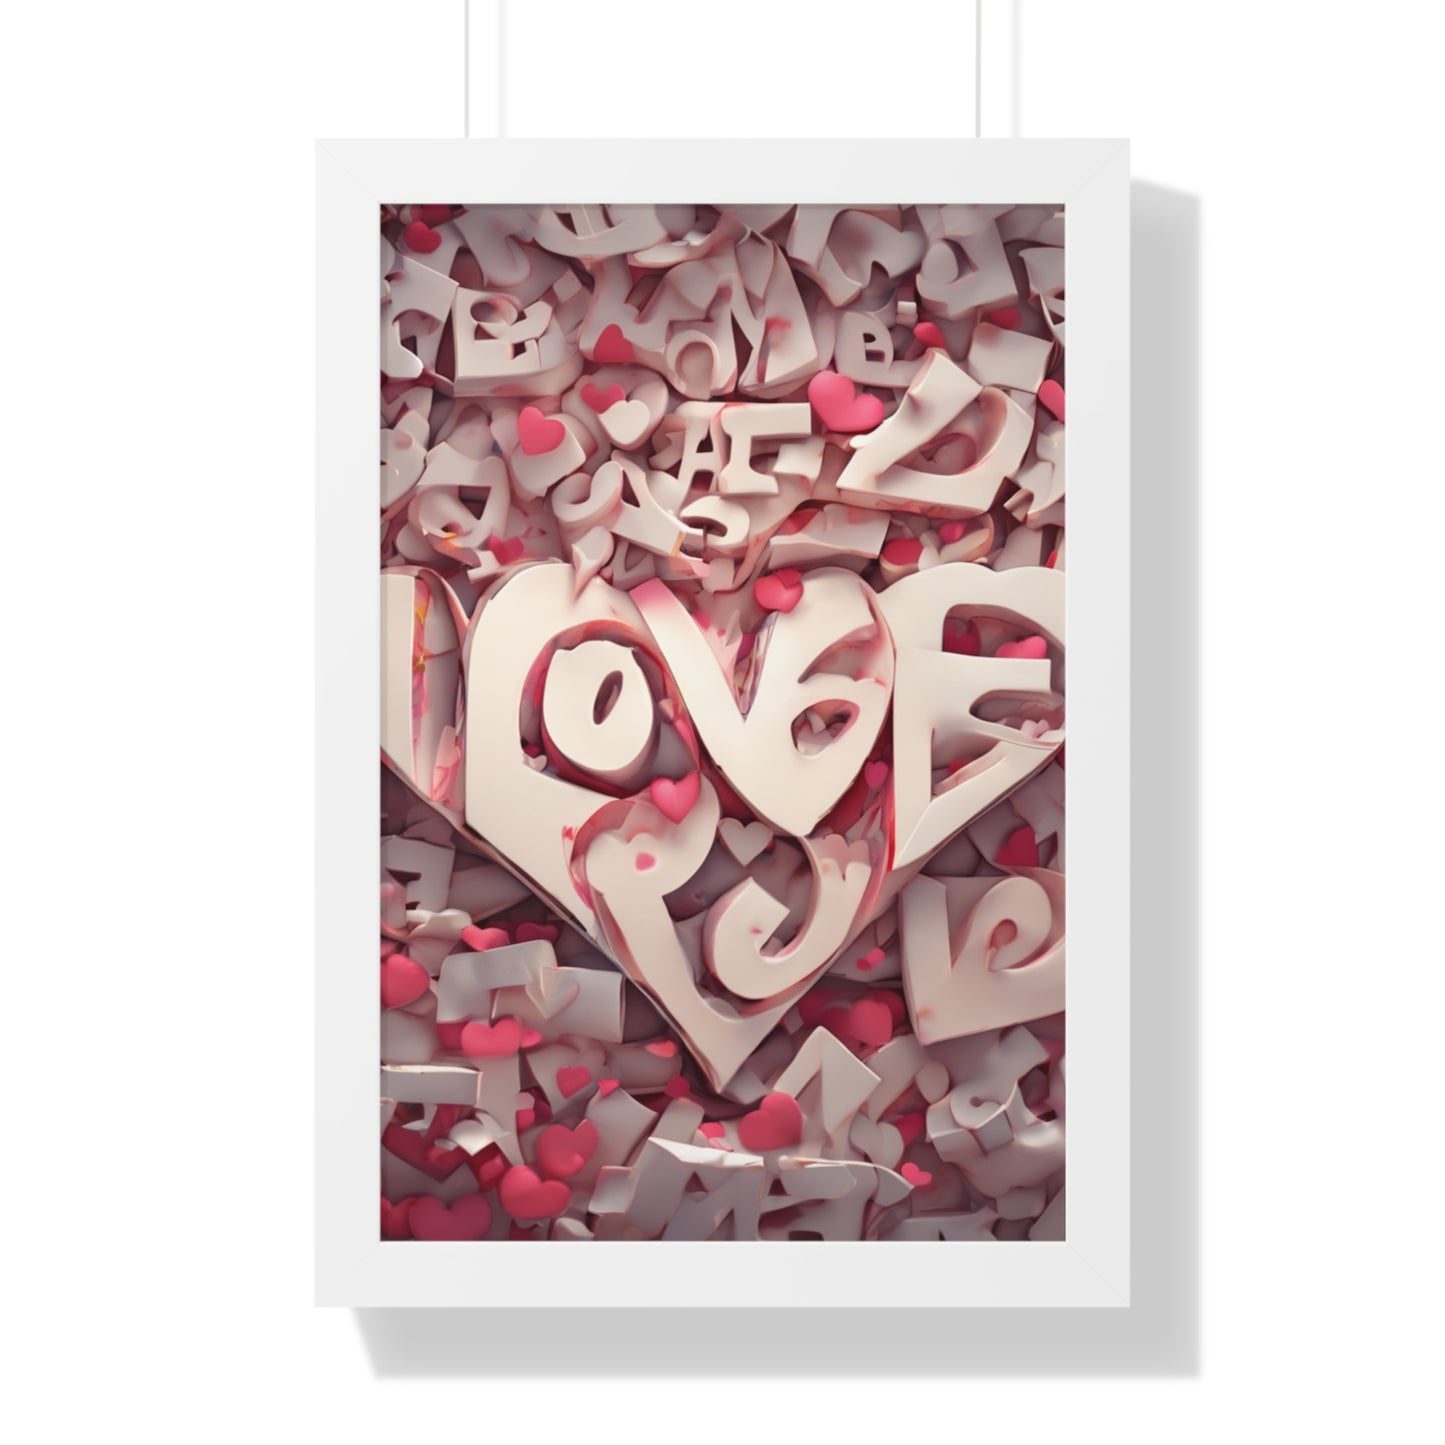 Embrace Love's Radiance Love Crazy Framed Poster